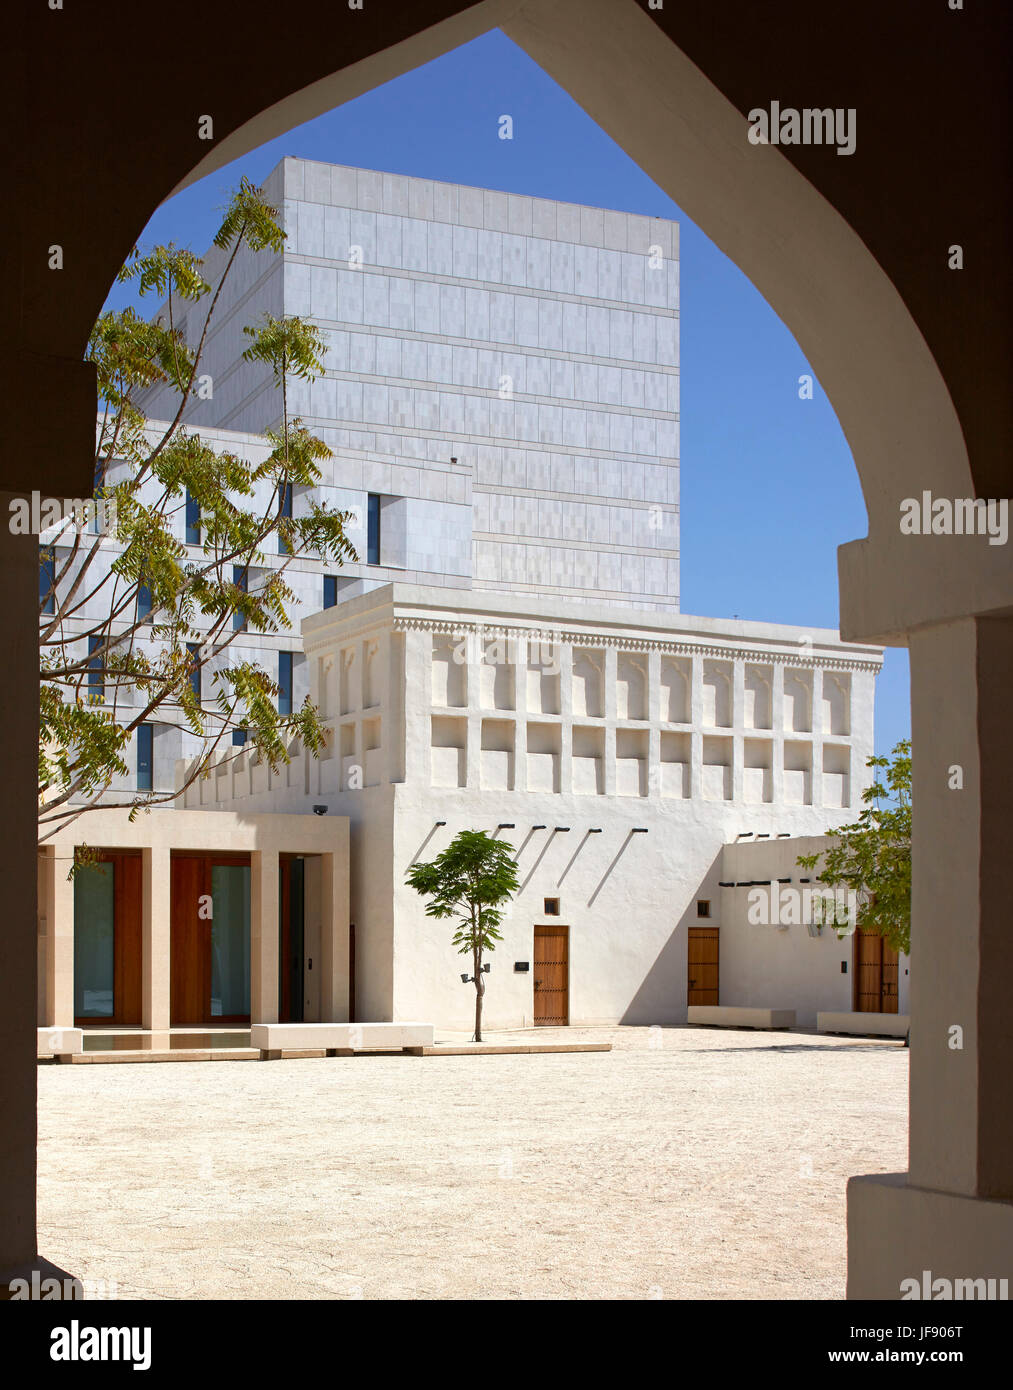 Gerahmte Ansicht im Innenhof aber islamischen Bogen. Mohammed Bin Jassim Haus, Doha, Katar. Architekt: John McAslan & Partner, 2017. Stockfoto